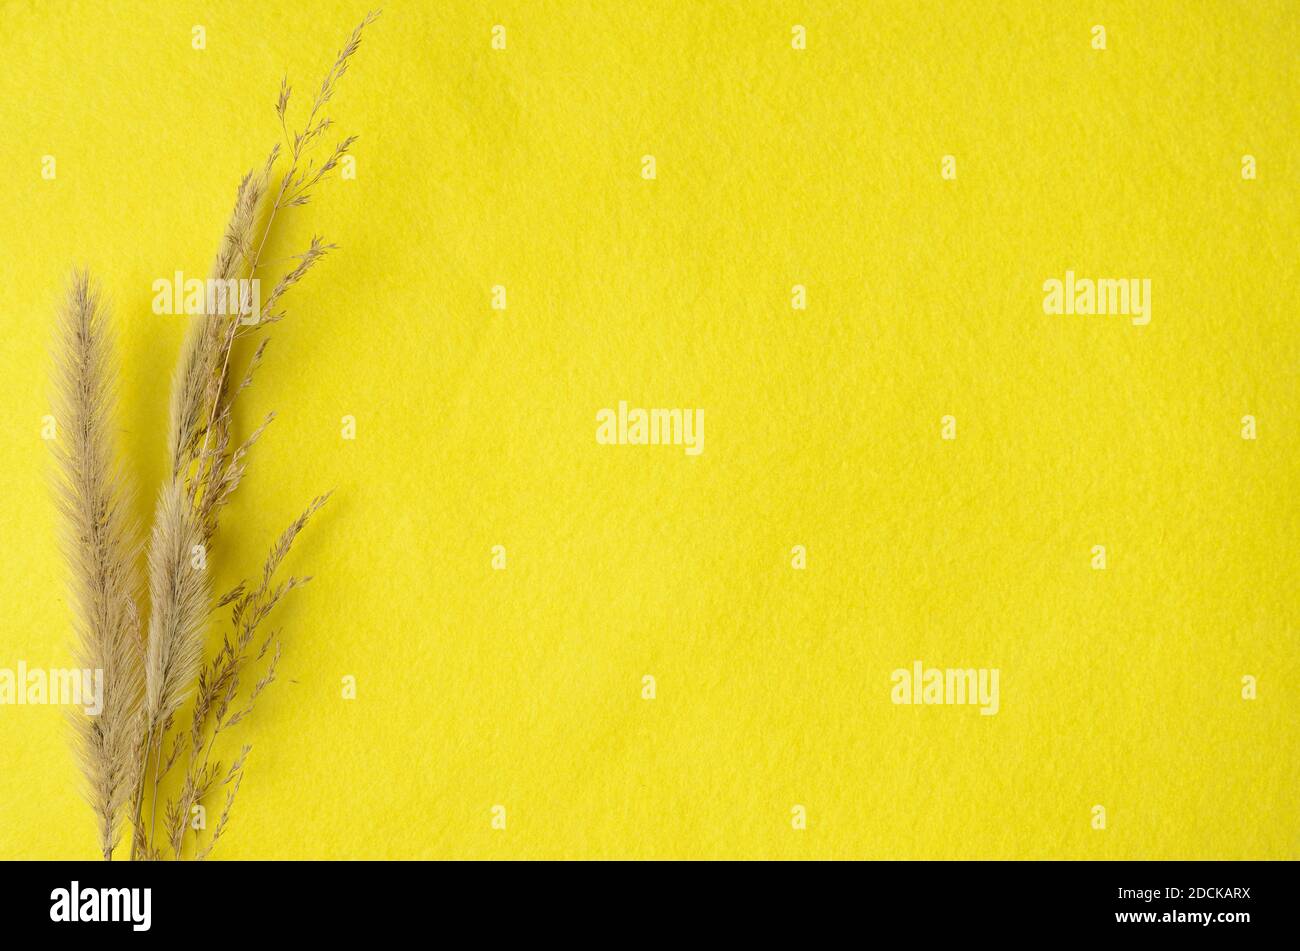 Modell. Trockene Grashalme auf einem leuchtend gelben Stoffhintergrund. Stockfoto